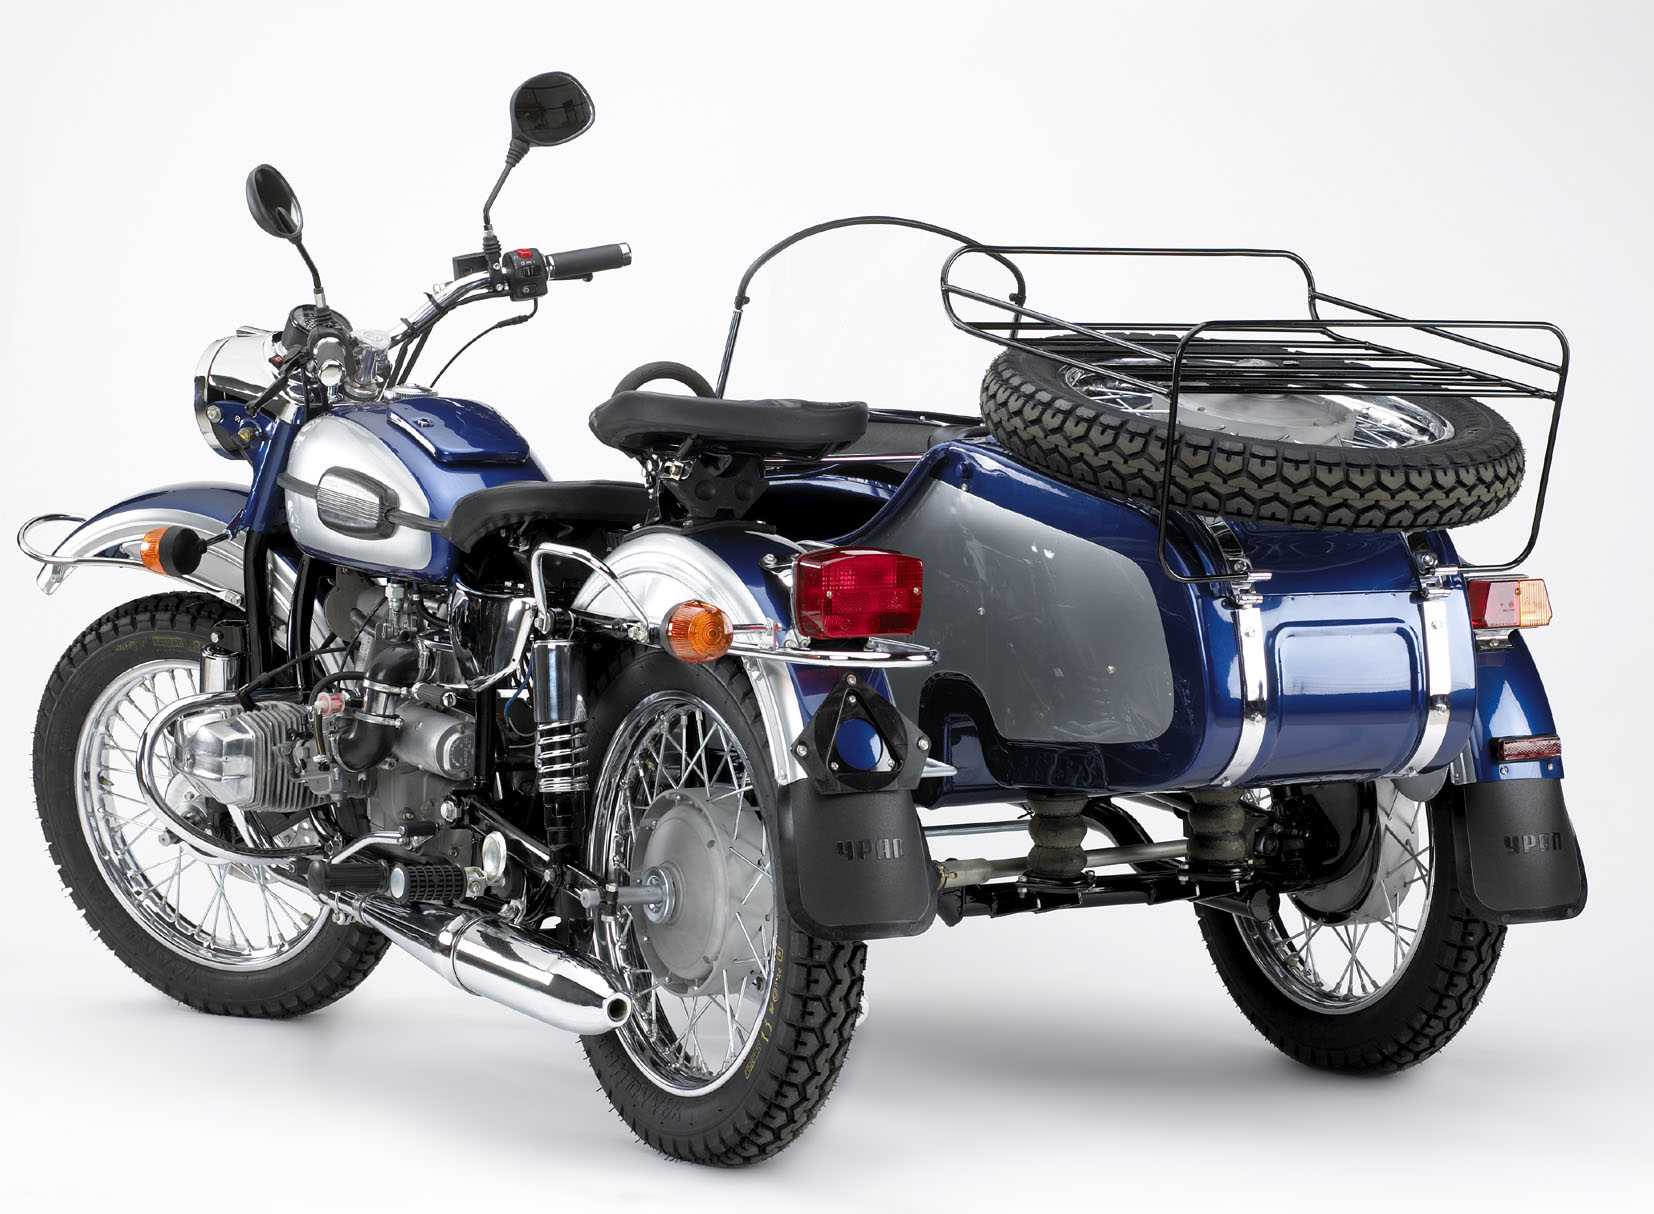 Иж юнкер - мотоцикл с необычной для отечественного мотопрома внешностью